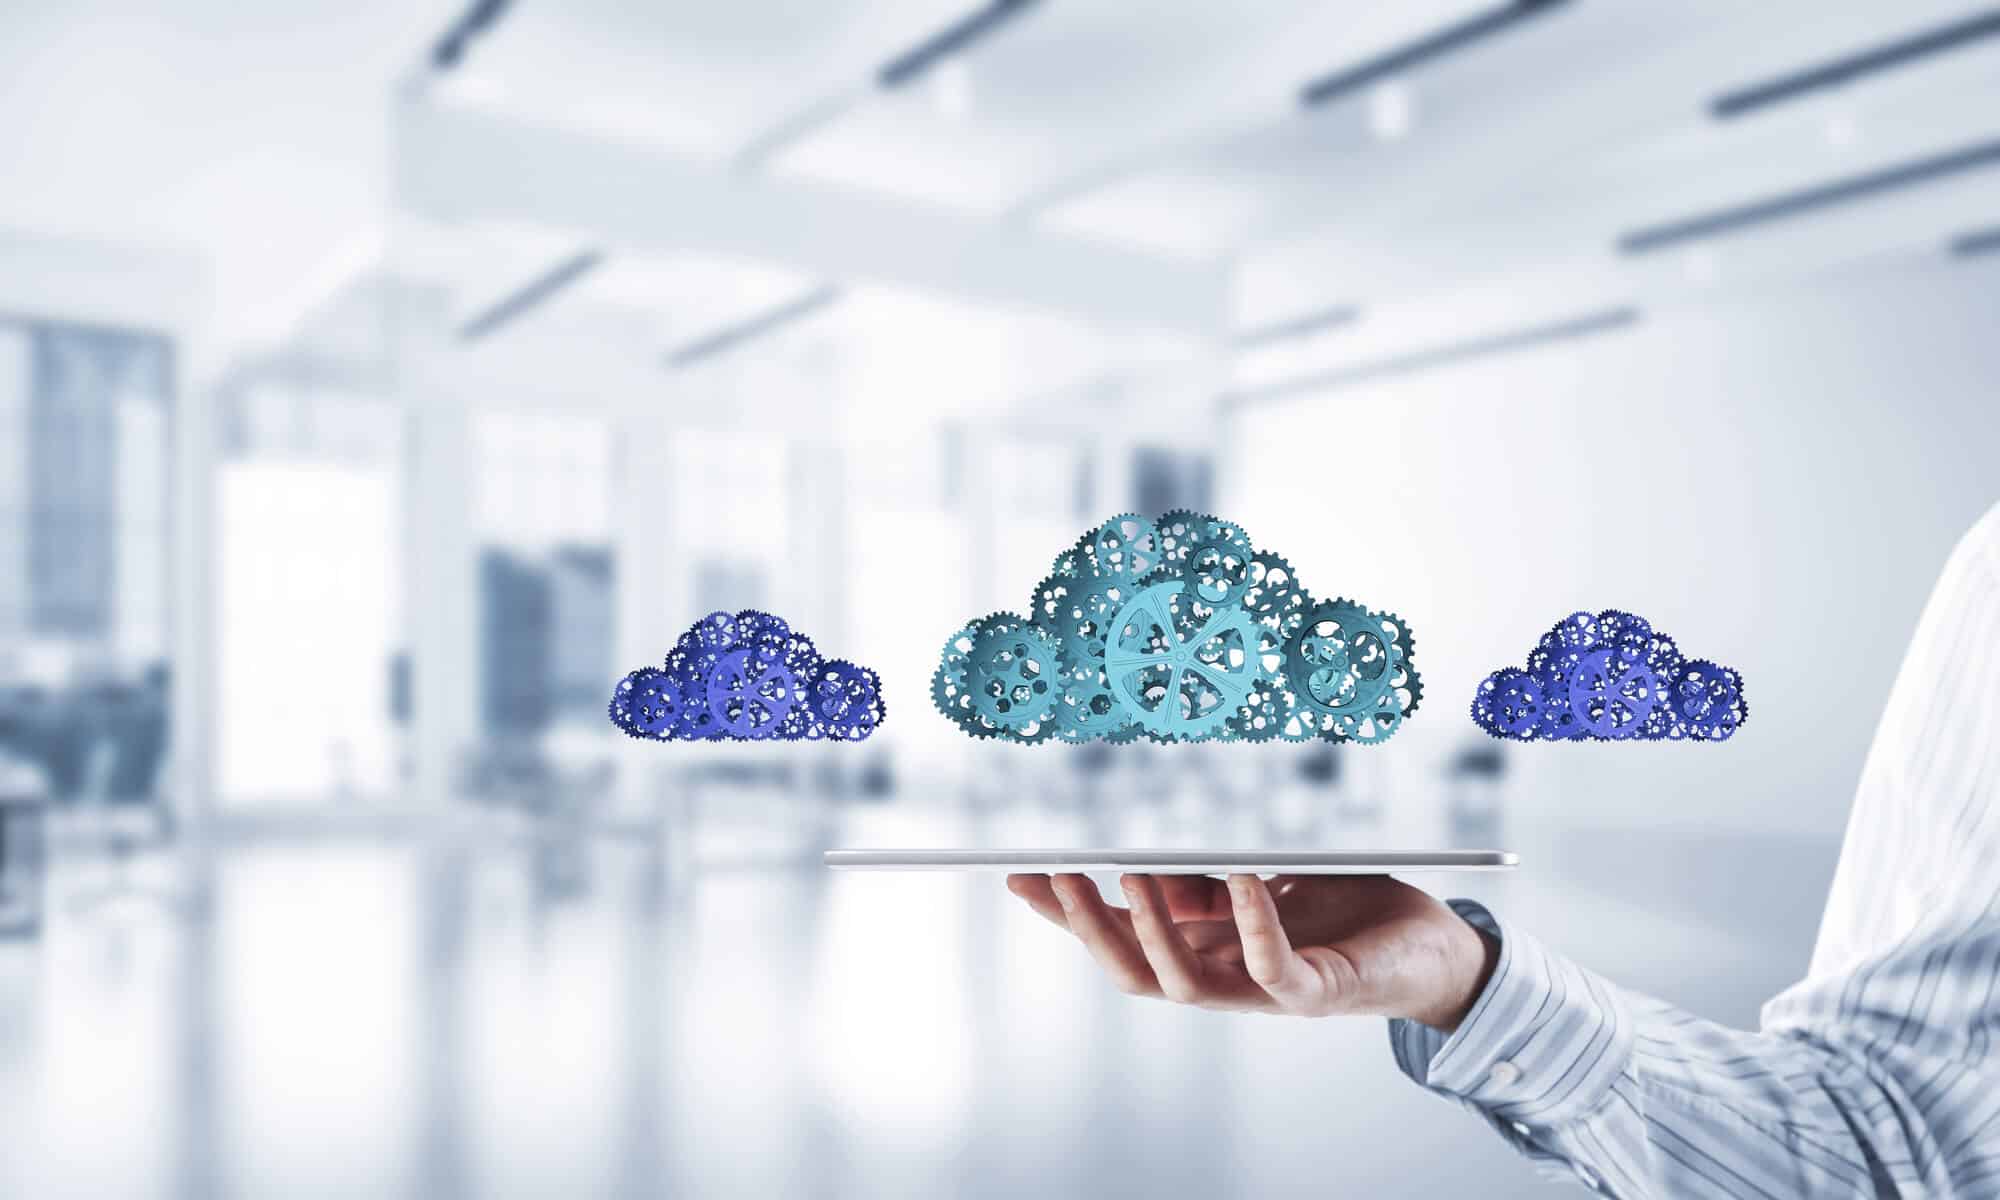 Engrenagens em forma de nuvem representando softwares que permitem armazenamento online